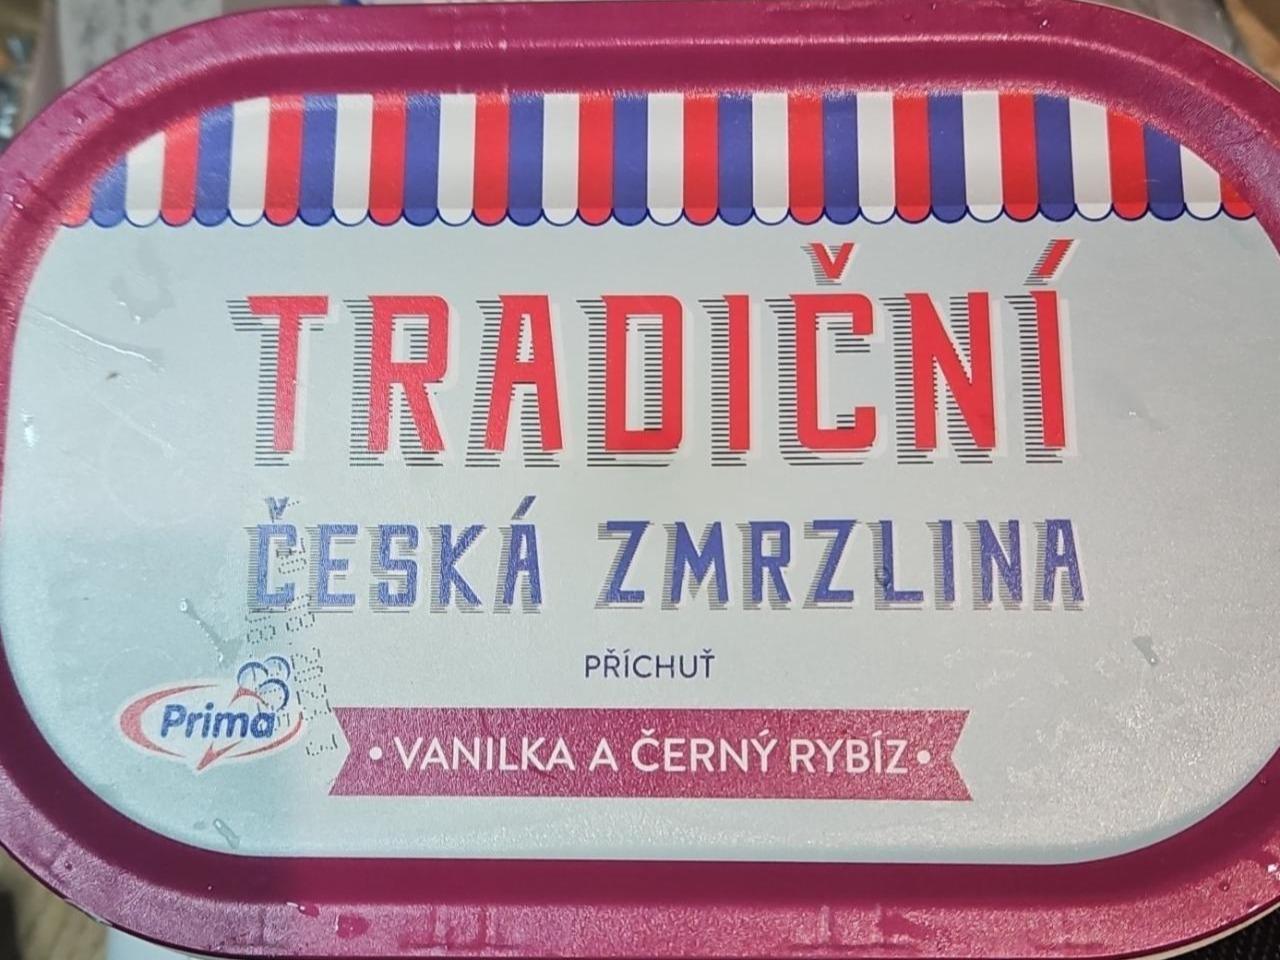 Fotografie - Tradiční česká zmrzlina vanilka a černý rybíz Prima